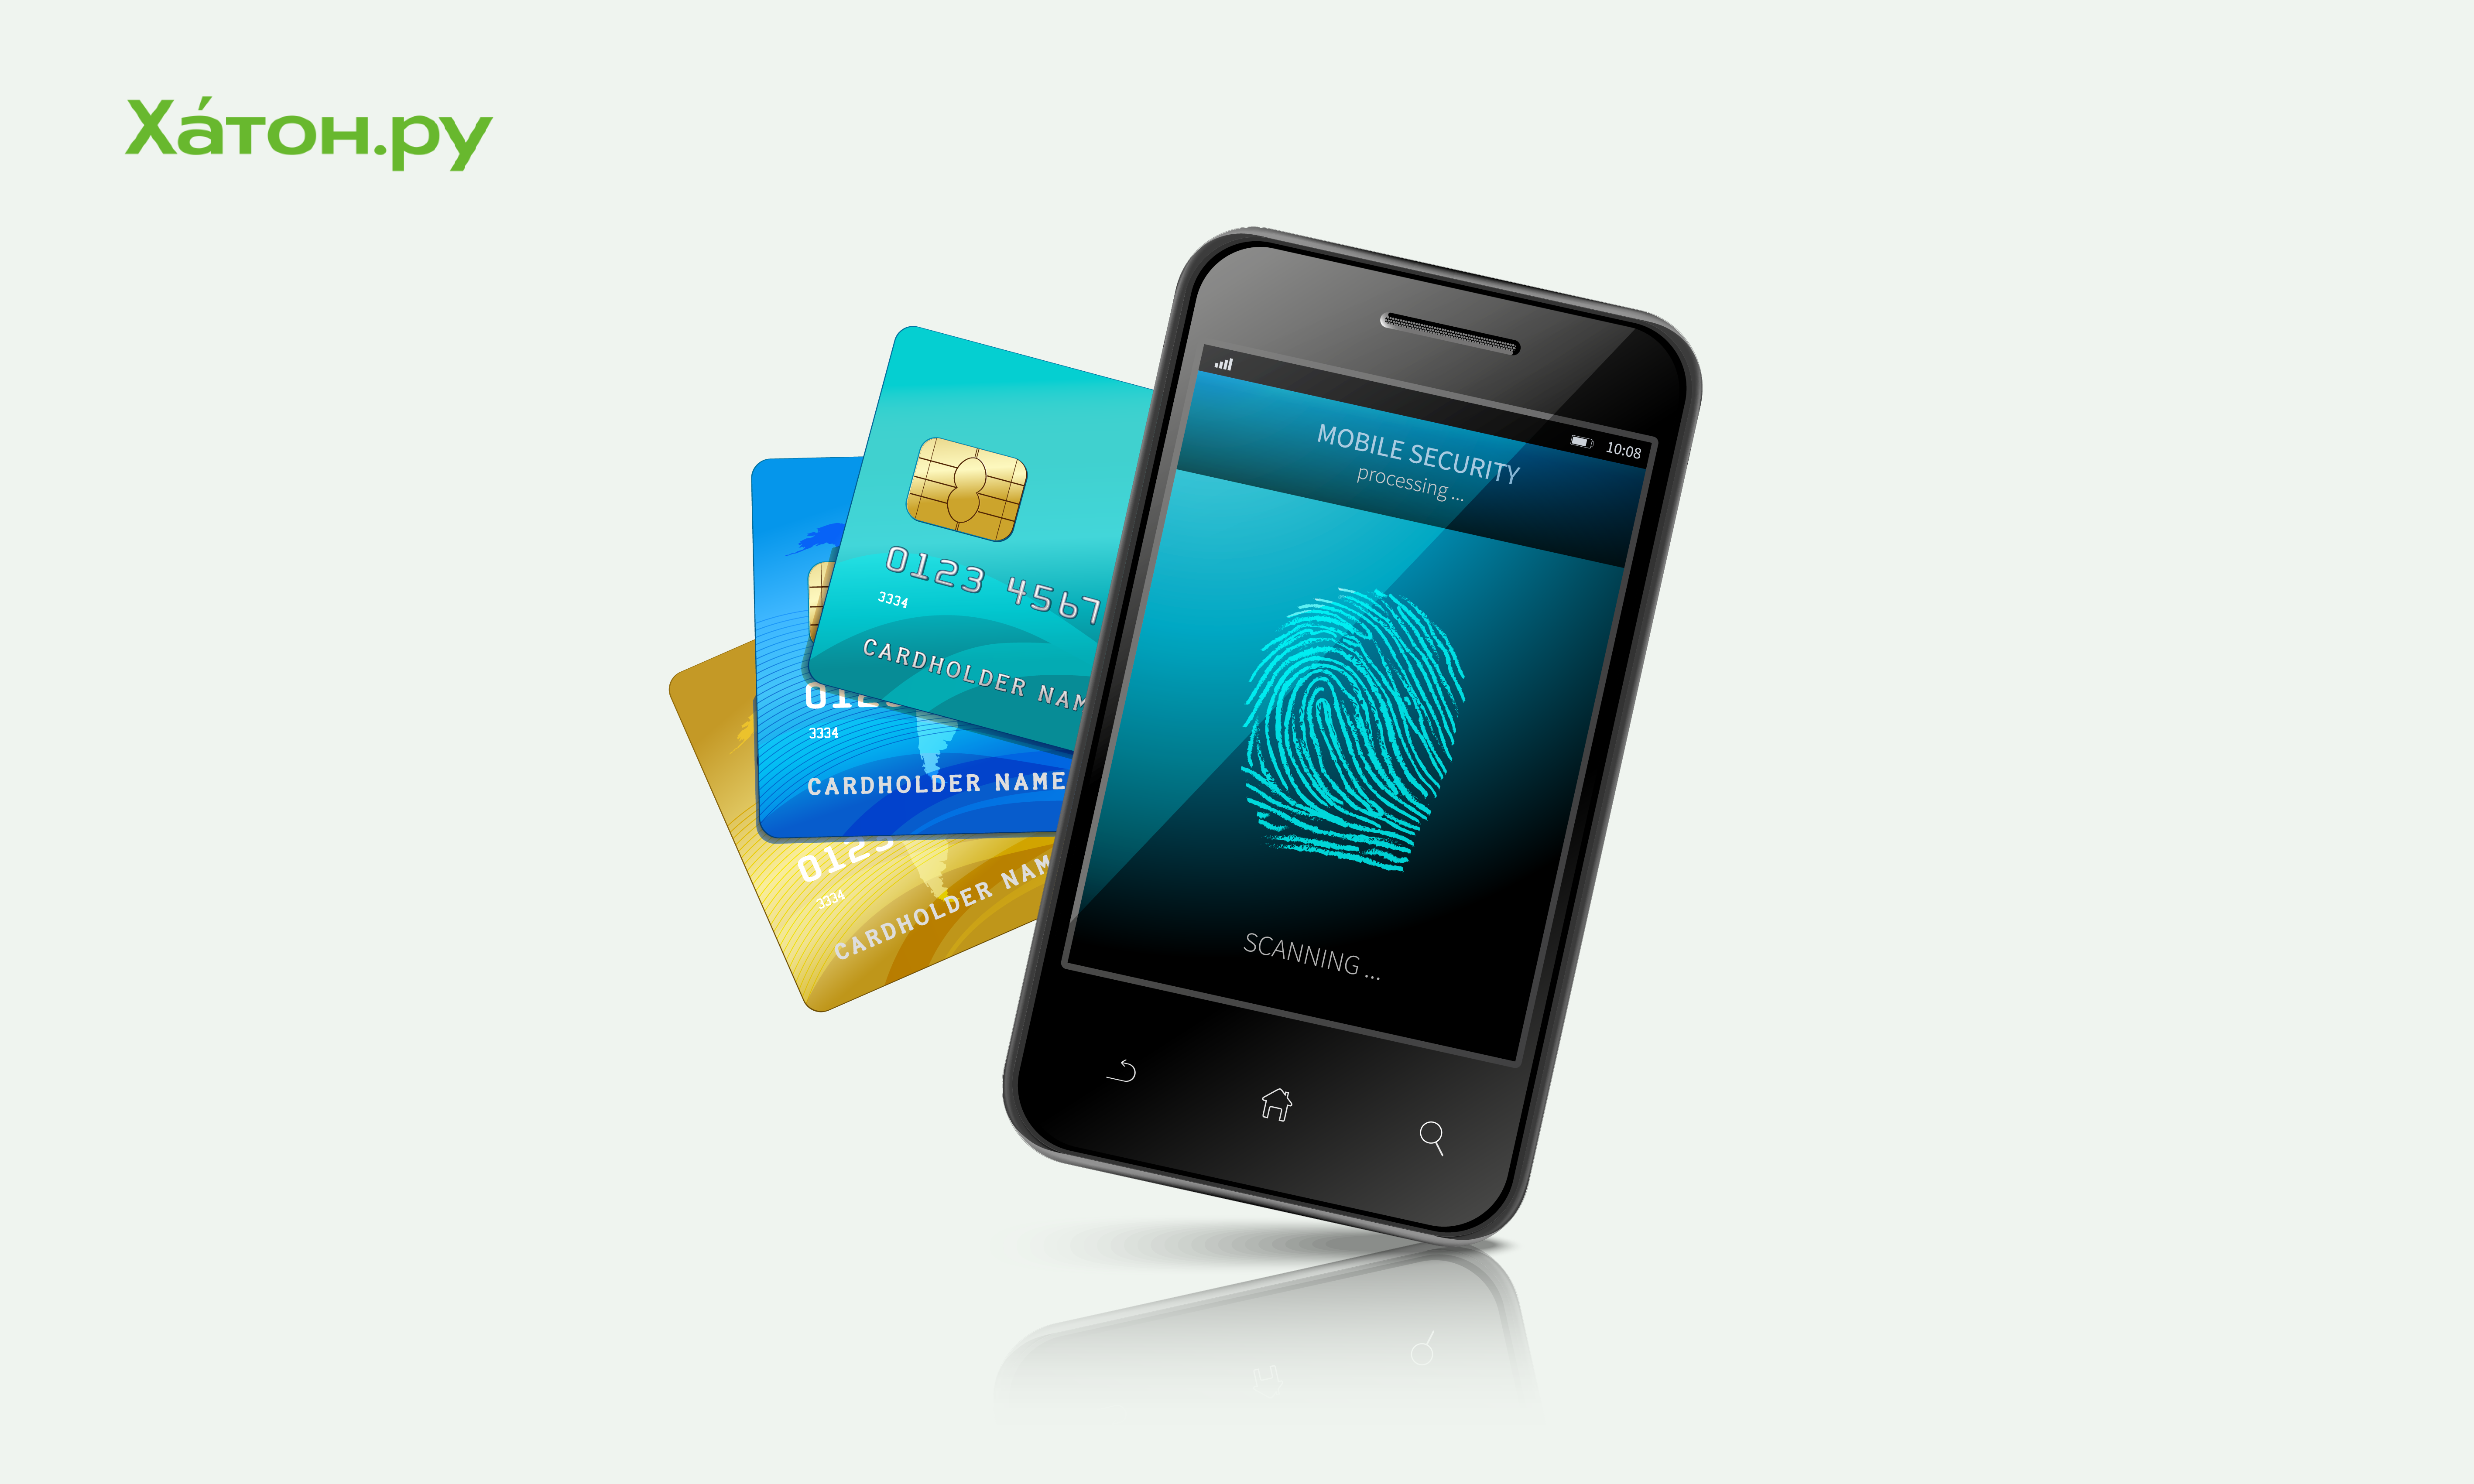 Банки хотят выдавать кредиты со смартфона по биометрии